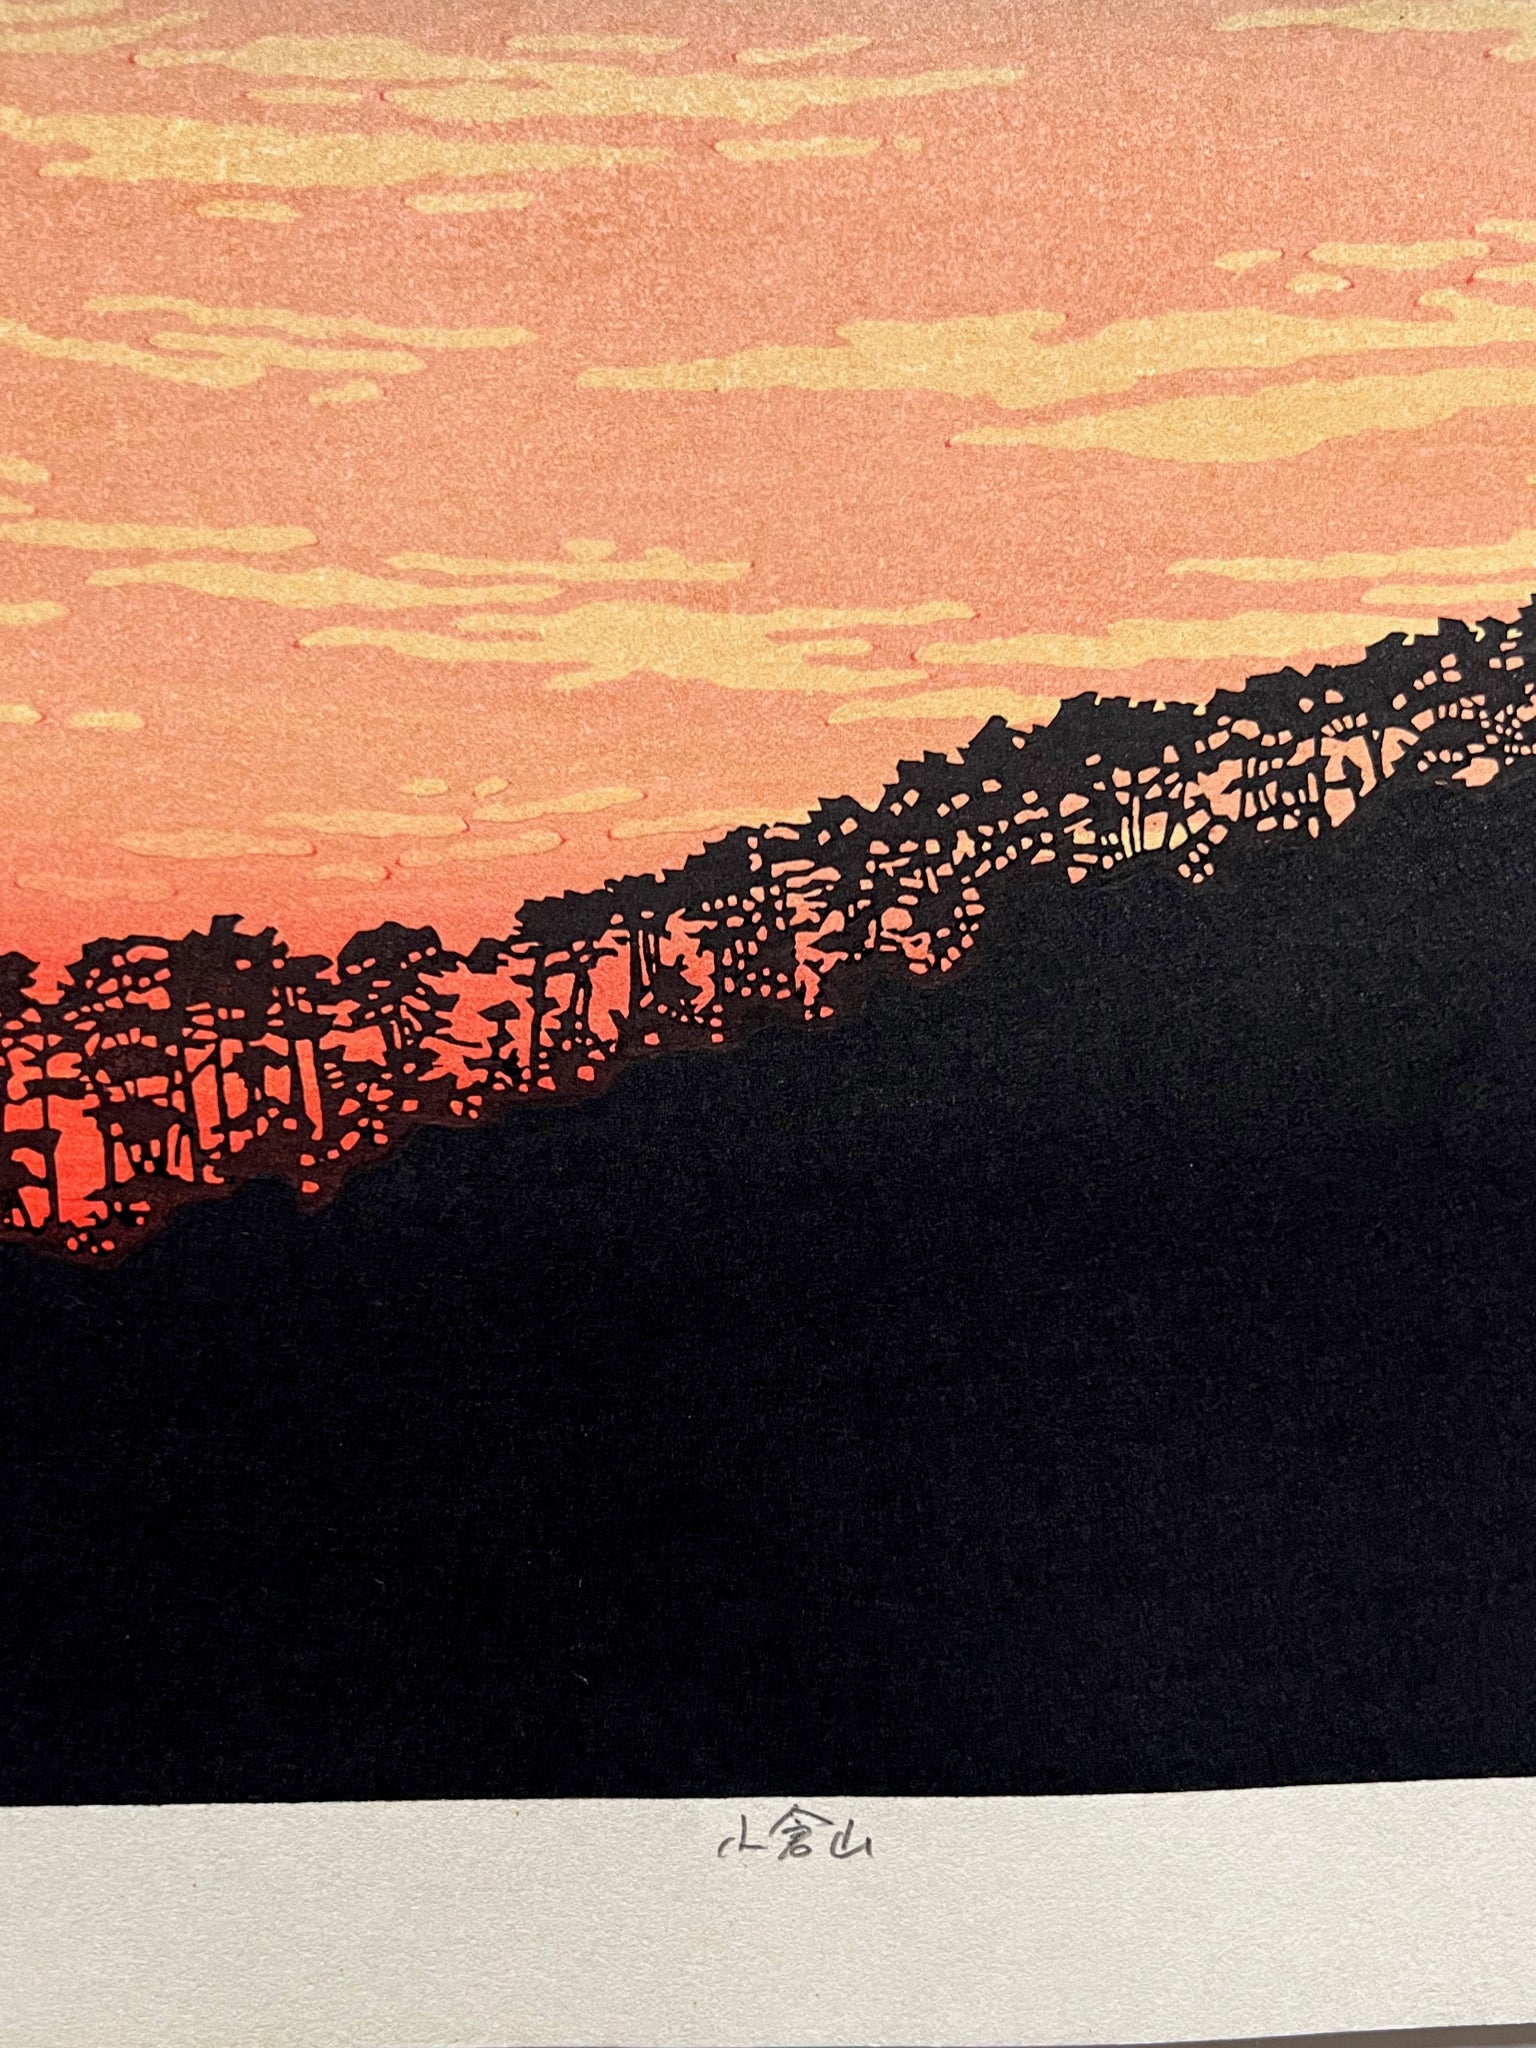 estampe japonaise contemporaine, les arbres du sommet de la montagne se découpent en ombre chinoise sur la lumière rouge flamboyante du coucher de soleil, le titre en japonais